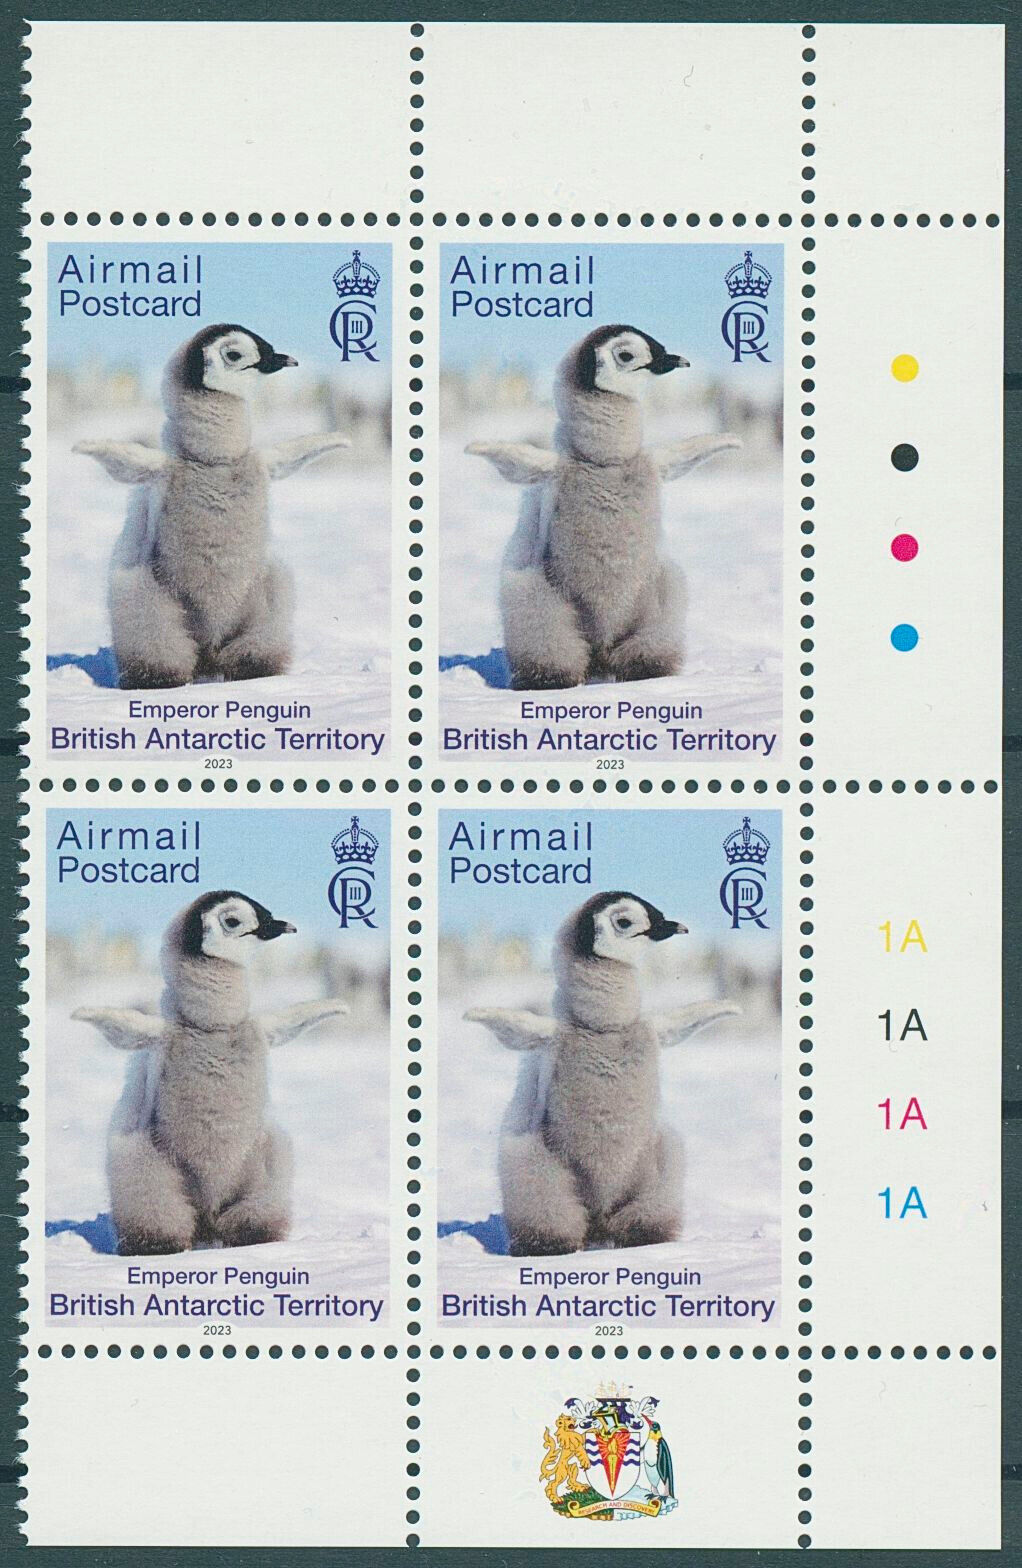 BAT 2023 MNH Birds on Stamps Penguins Airmail Postcard Emperor Penguin 4v Block